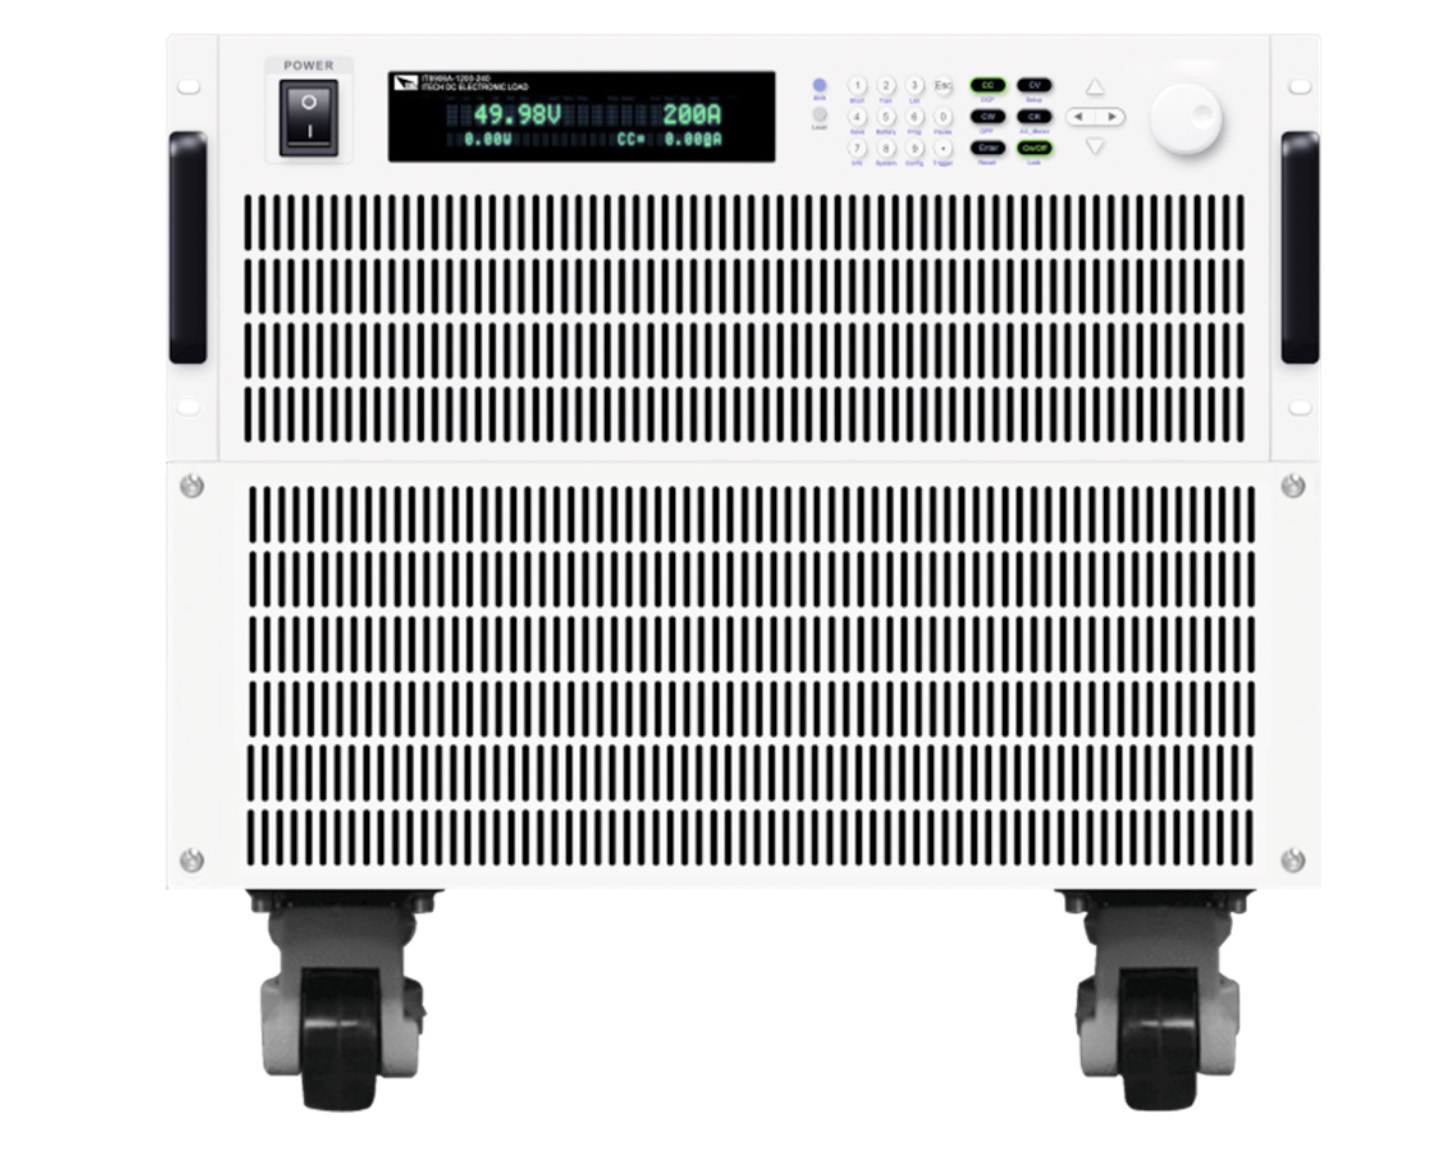 Программируемые электронные нагрузкиITECH серии IT8900A/Eс мощностью до 54 кВт